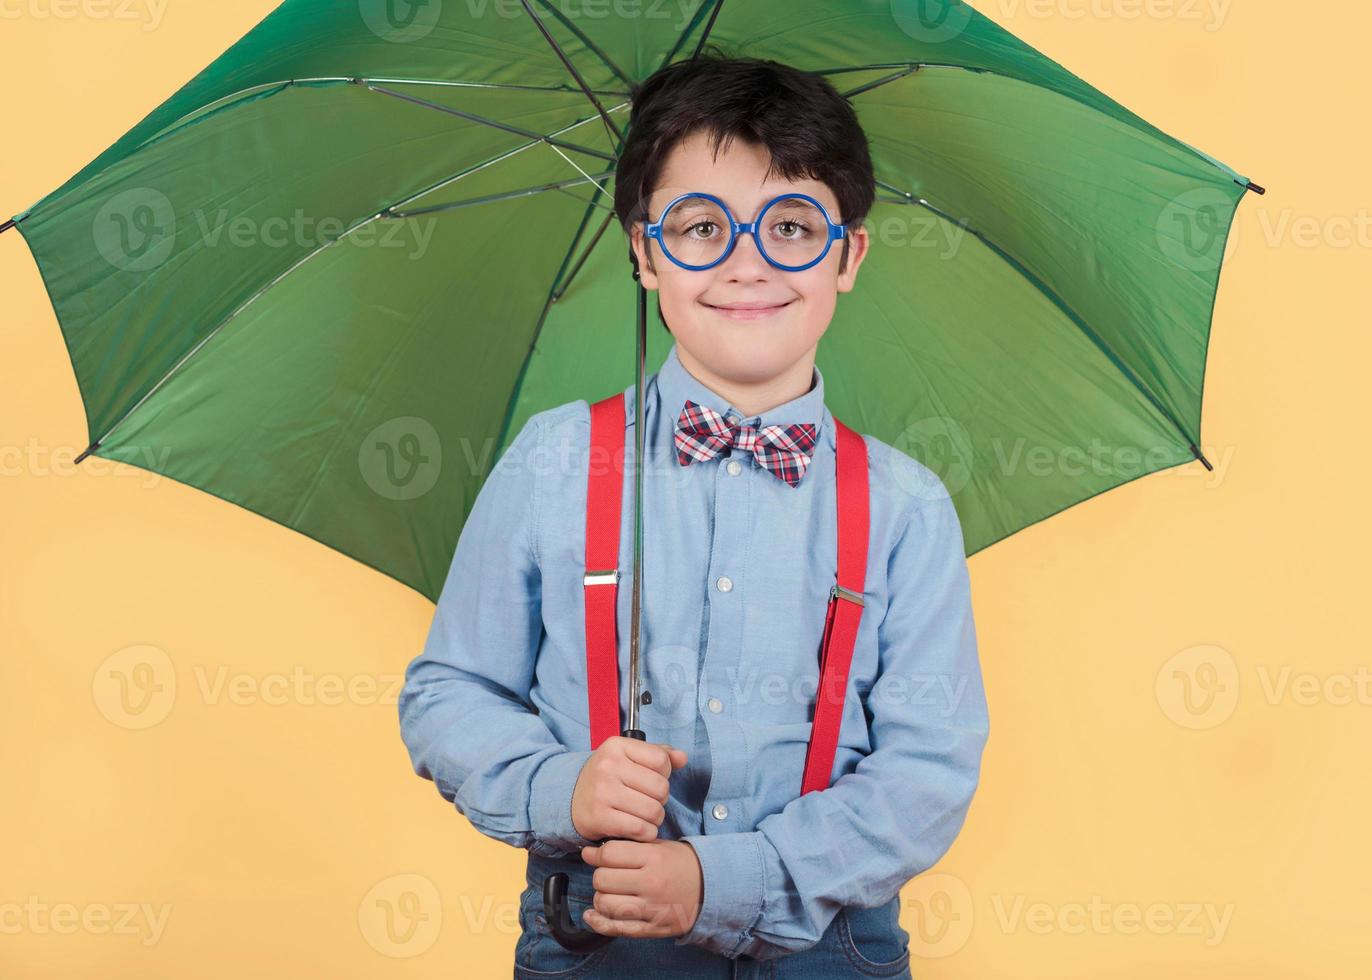 criança com guarda-chuva verde foto